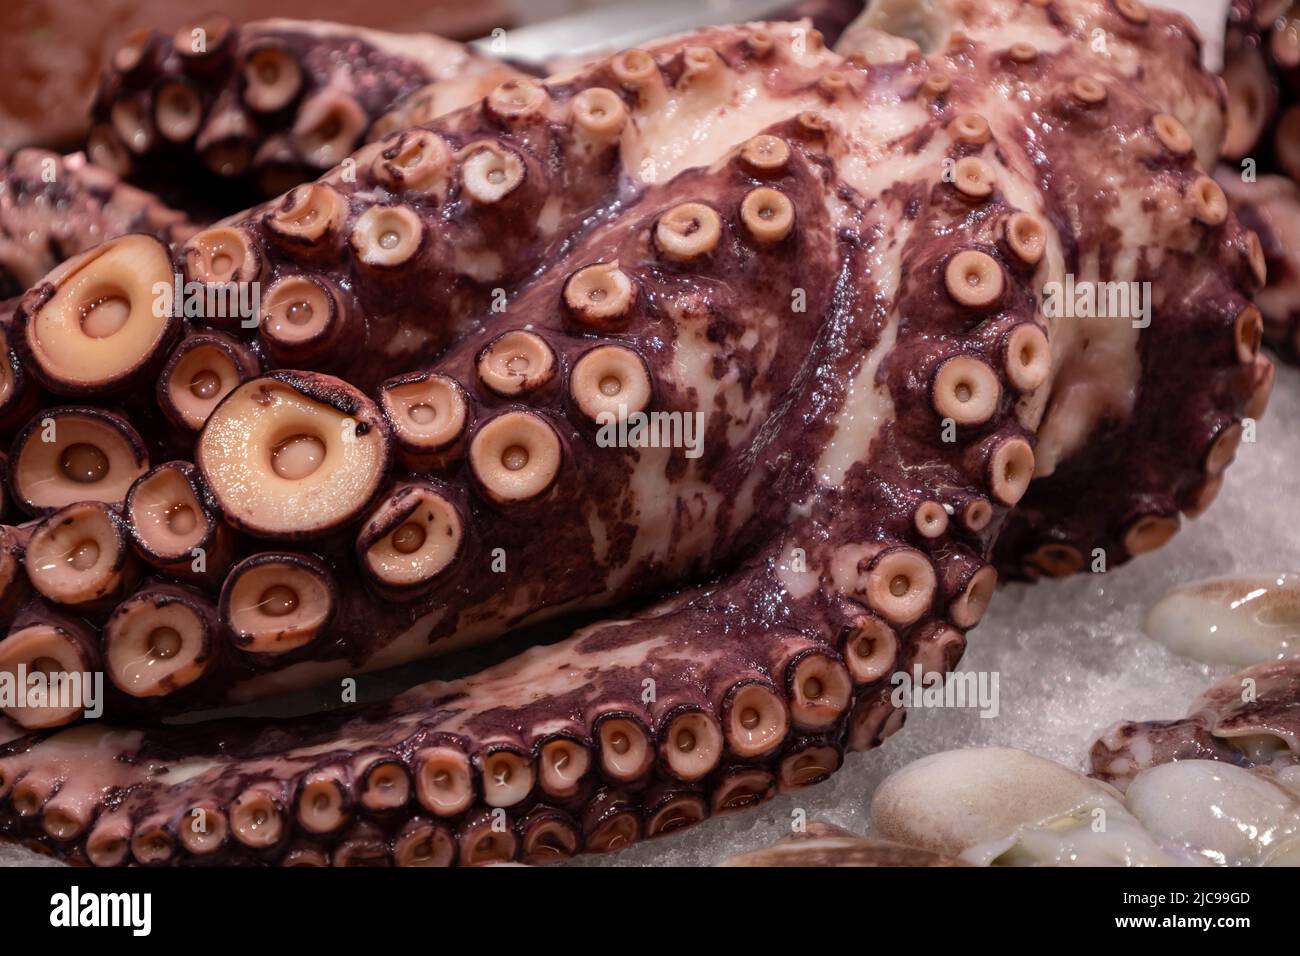 Nähern Sie sich einem Arm eines Meereskraken mit seinen riesigen Tentakeln. Lebensmittel marinen Ursprungs. Sehr intelligentes Meerestier. Stockfoto